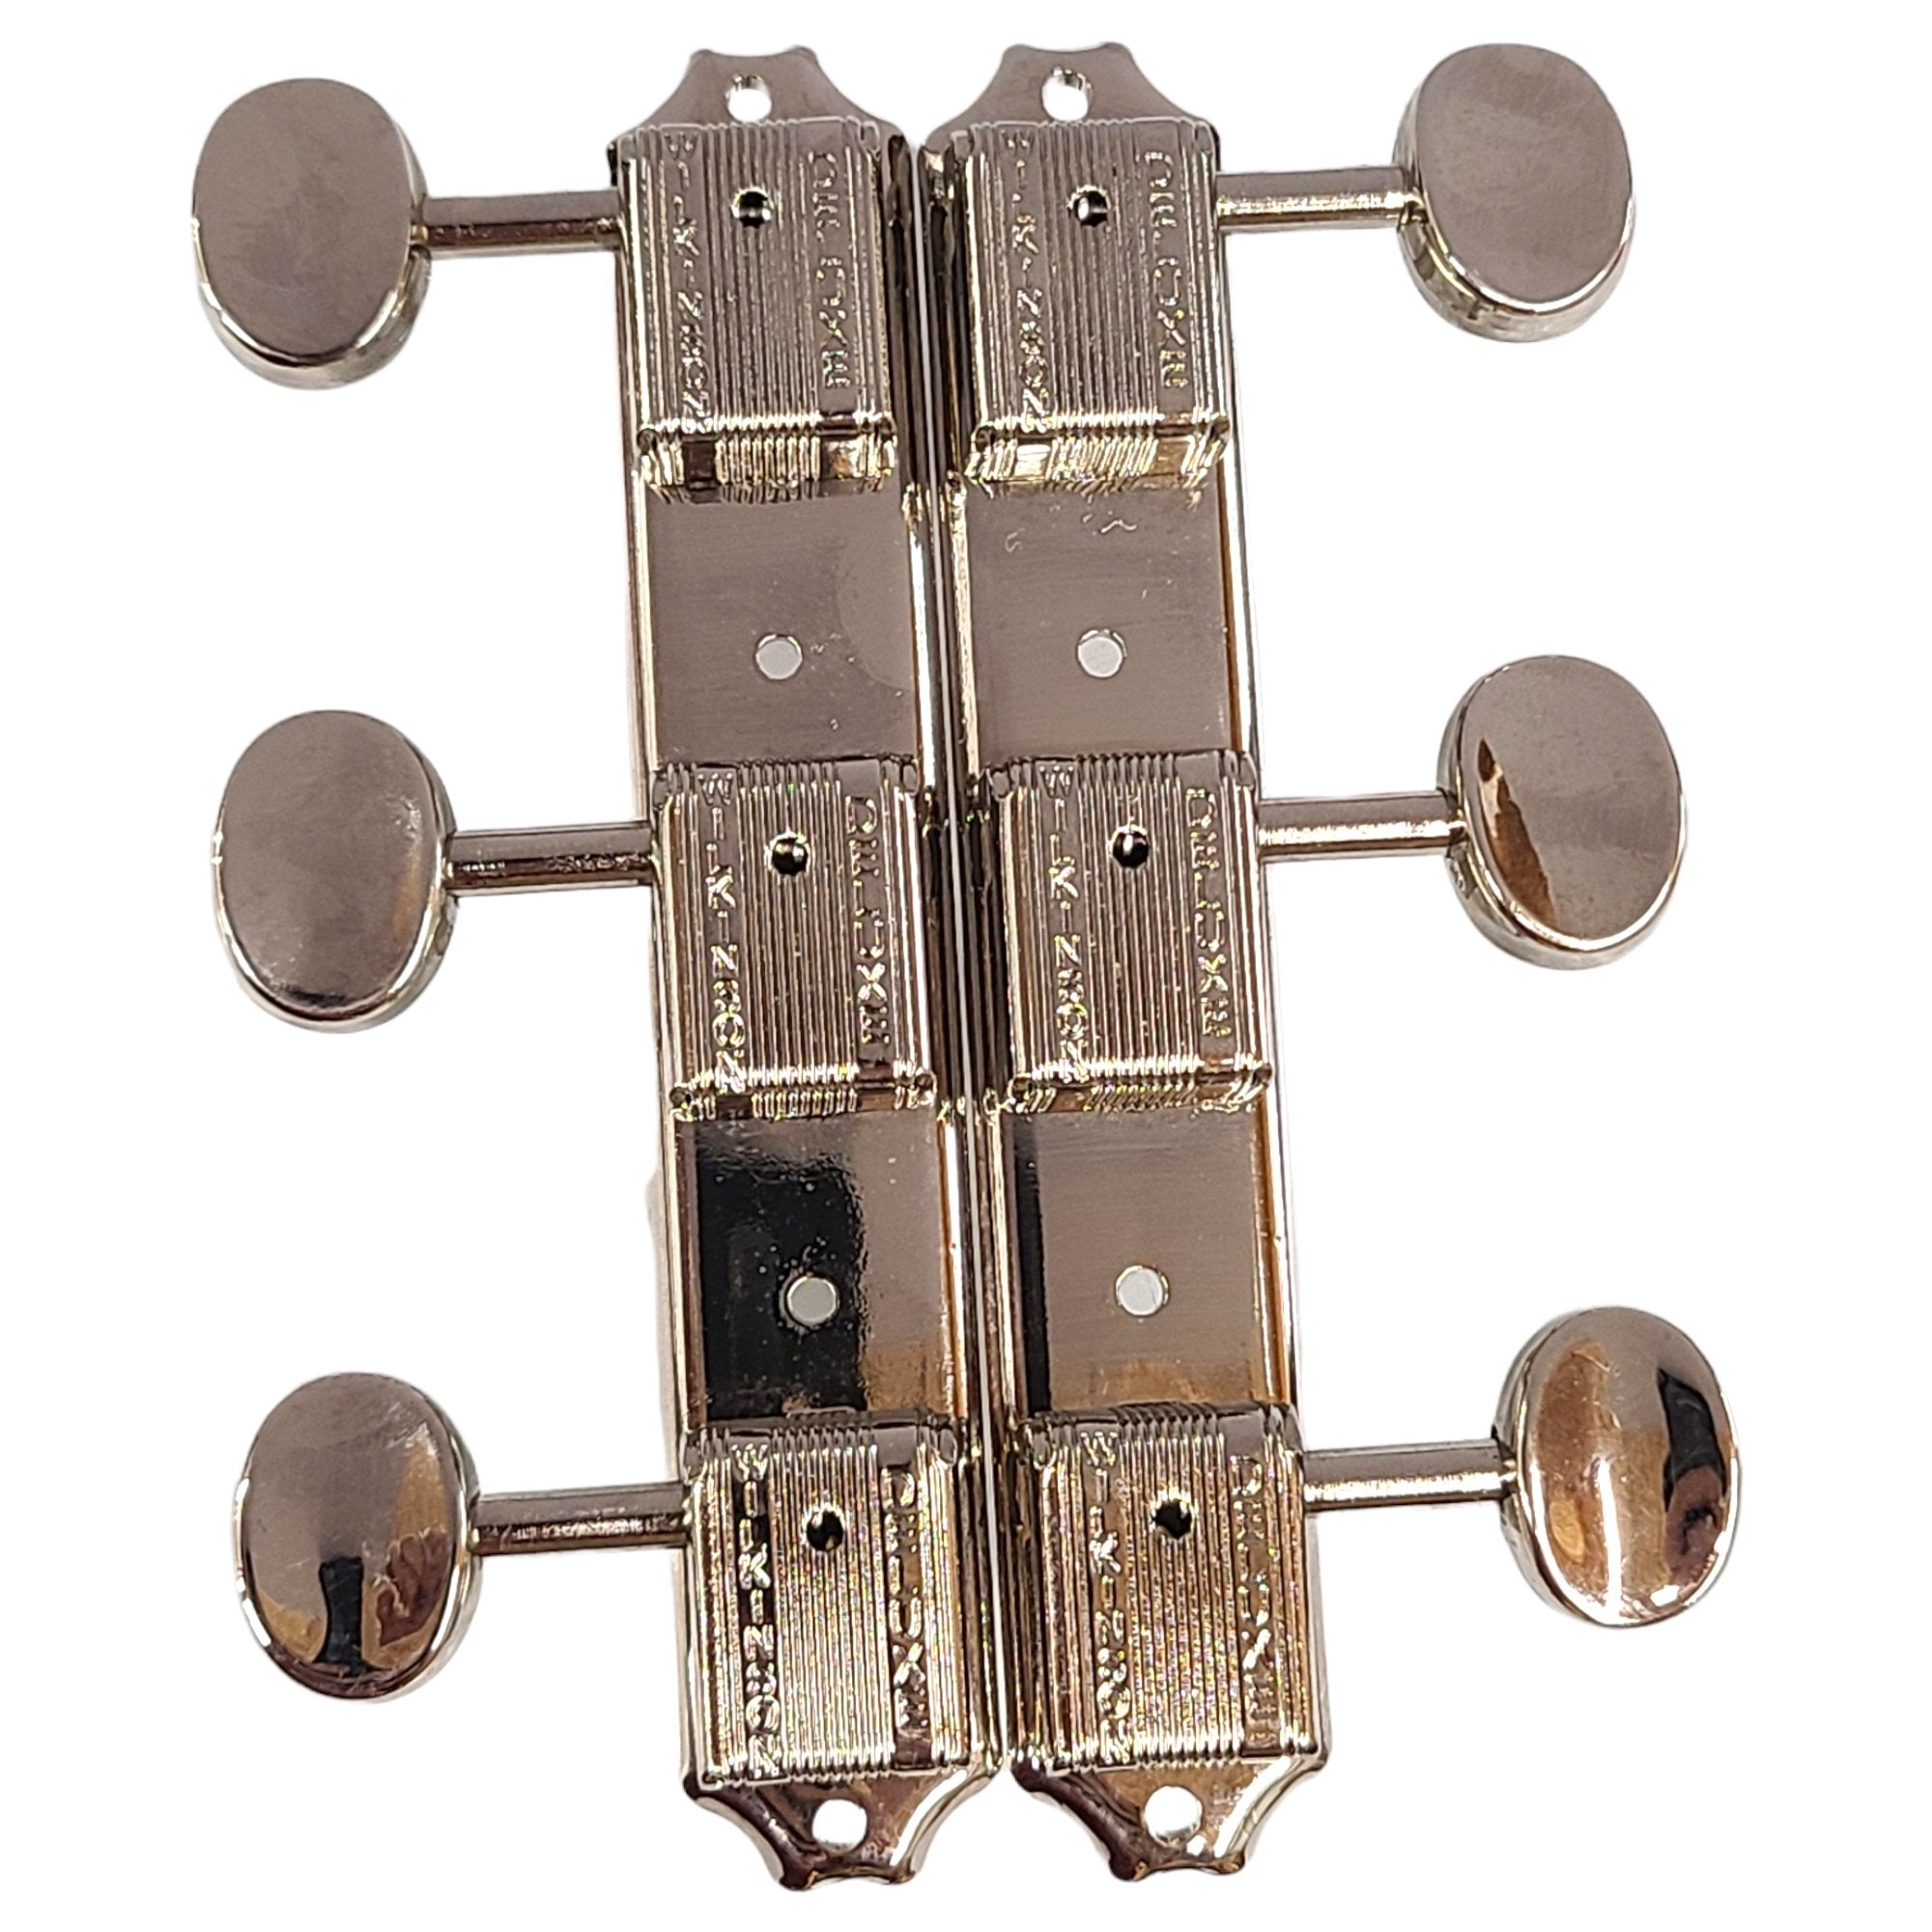 Wilkinson 3x3 Plate Guitar Tuning Pegs, Nickel